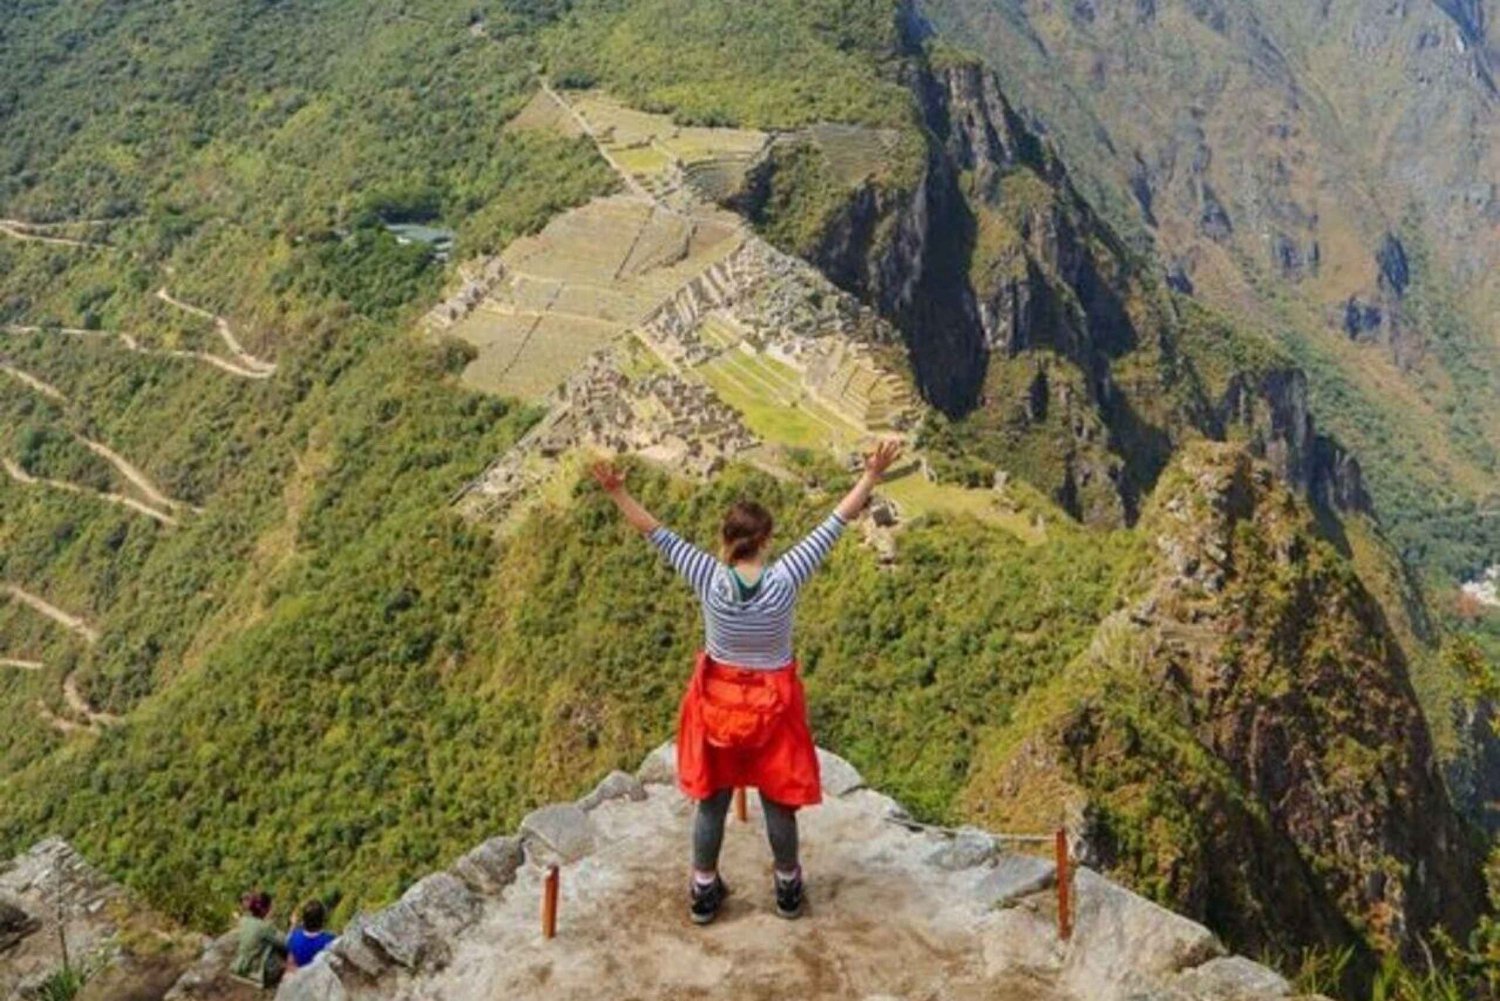 Subida a Machu Picchu e Huayna Picchu: Ingresso de entrada